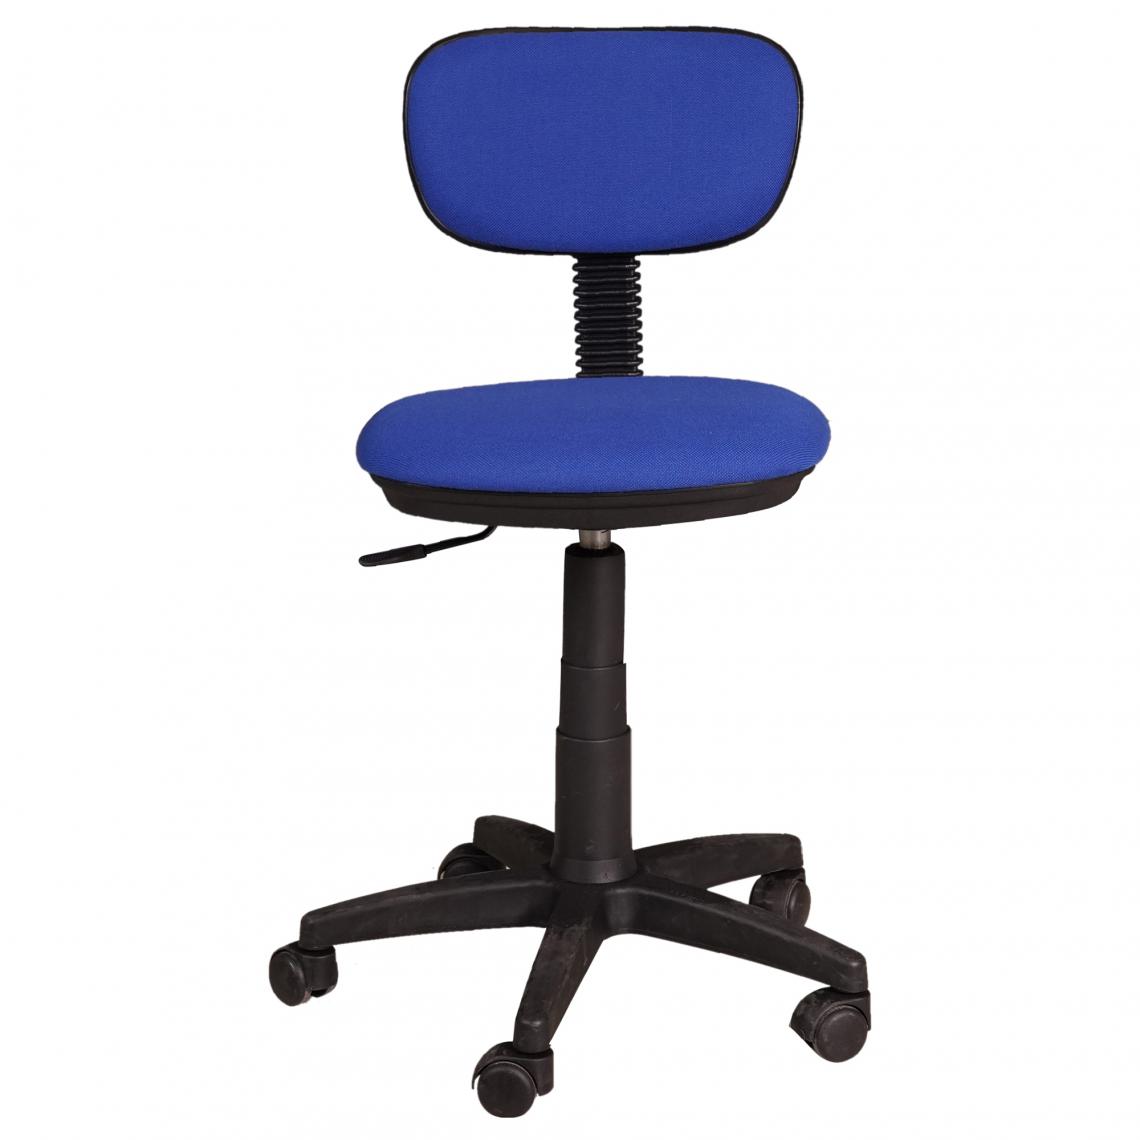 Alter - Chaise de bureau sur roulettes, Chaise relevable, Chaise rembourrée en tissu, 58x53h77 / 87 cm, Couleur bleu - Chaises